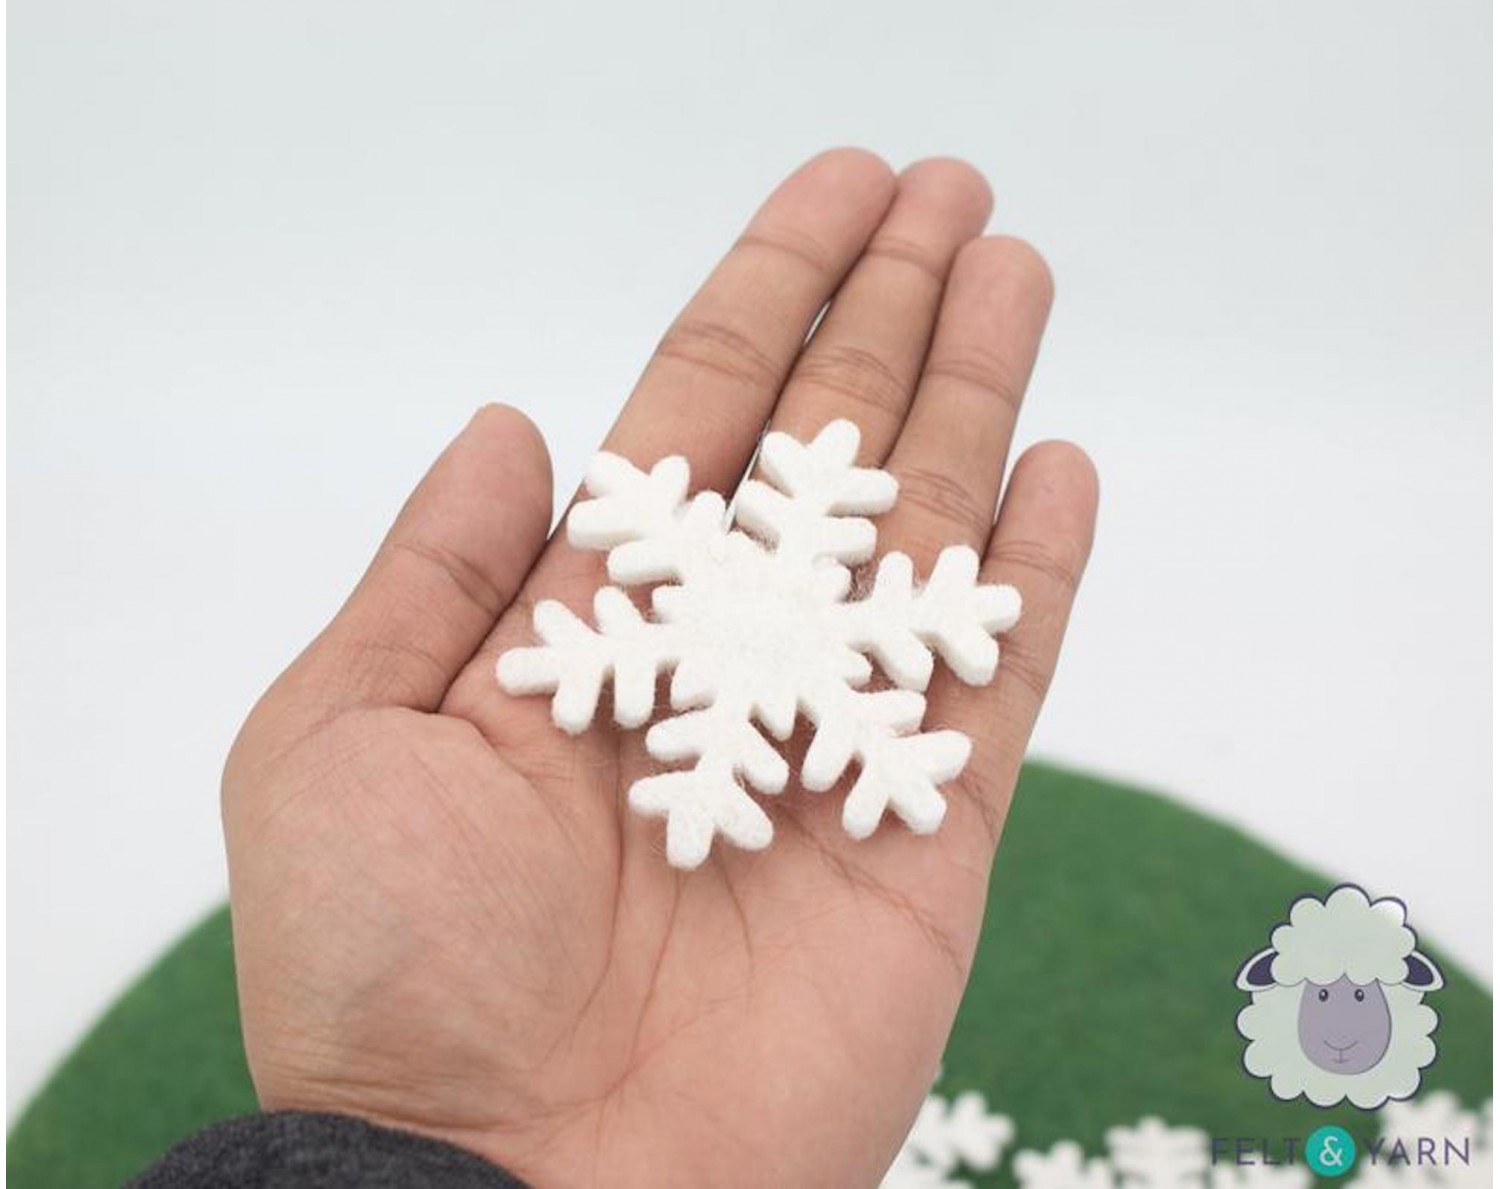 7cm White Felt Snowflakes